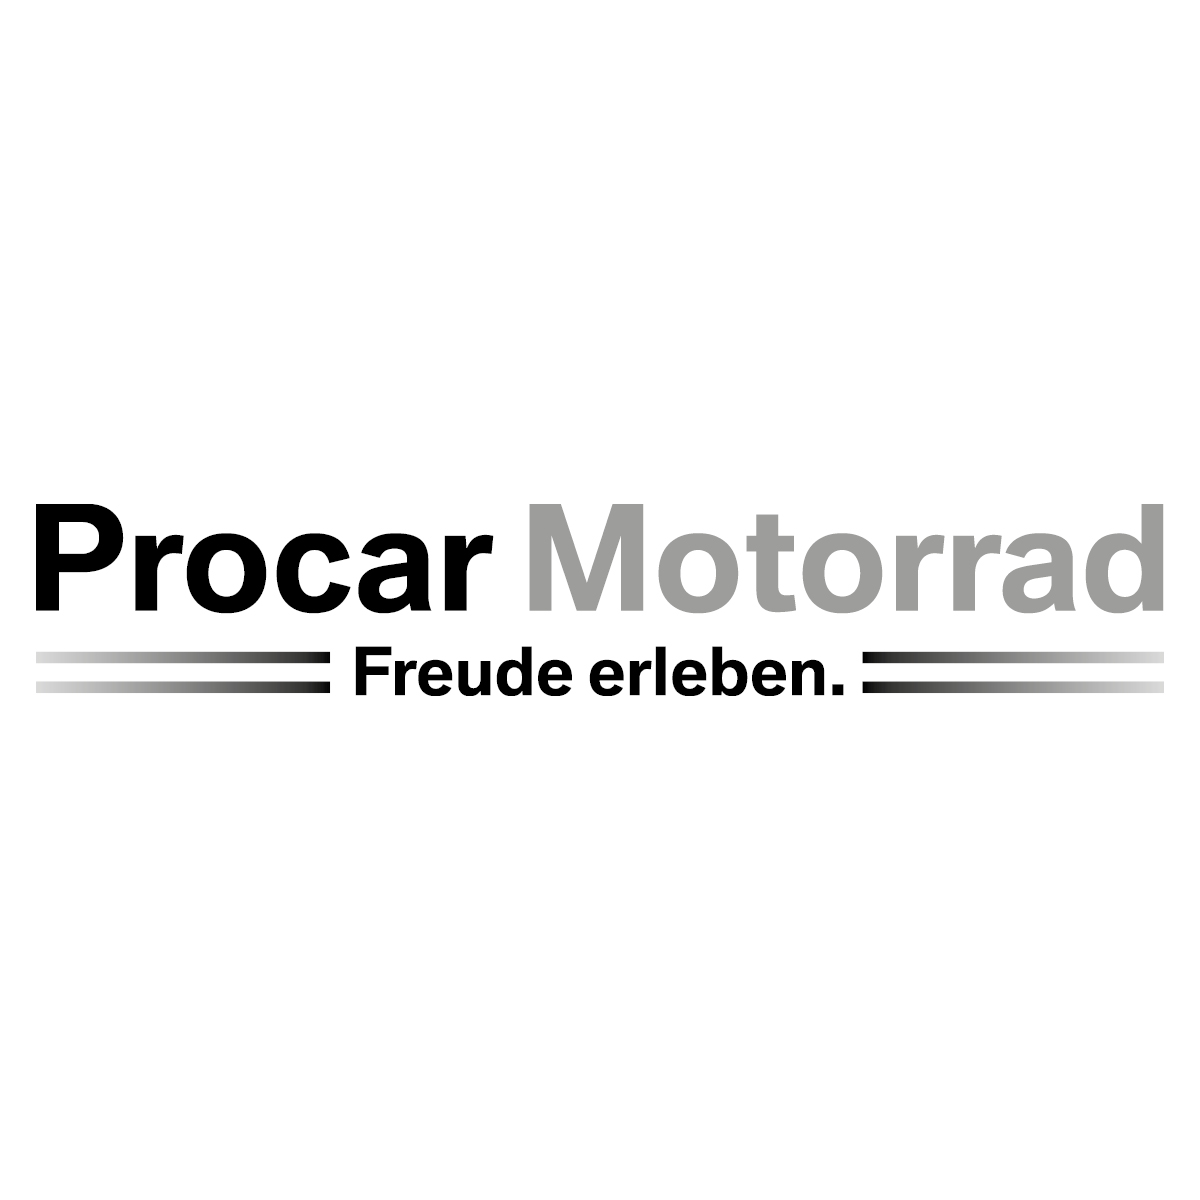 Bilder Procar Motorrad - Münster